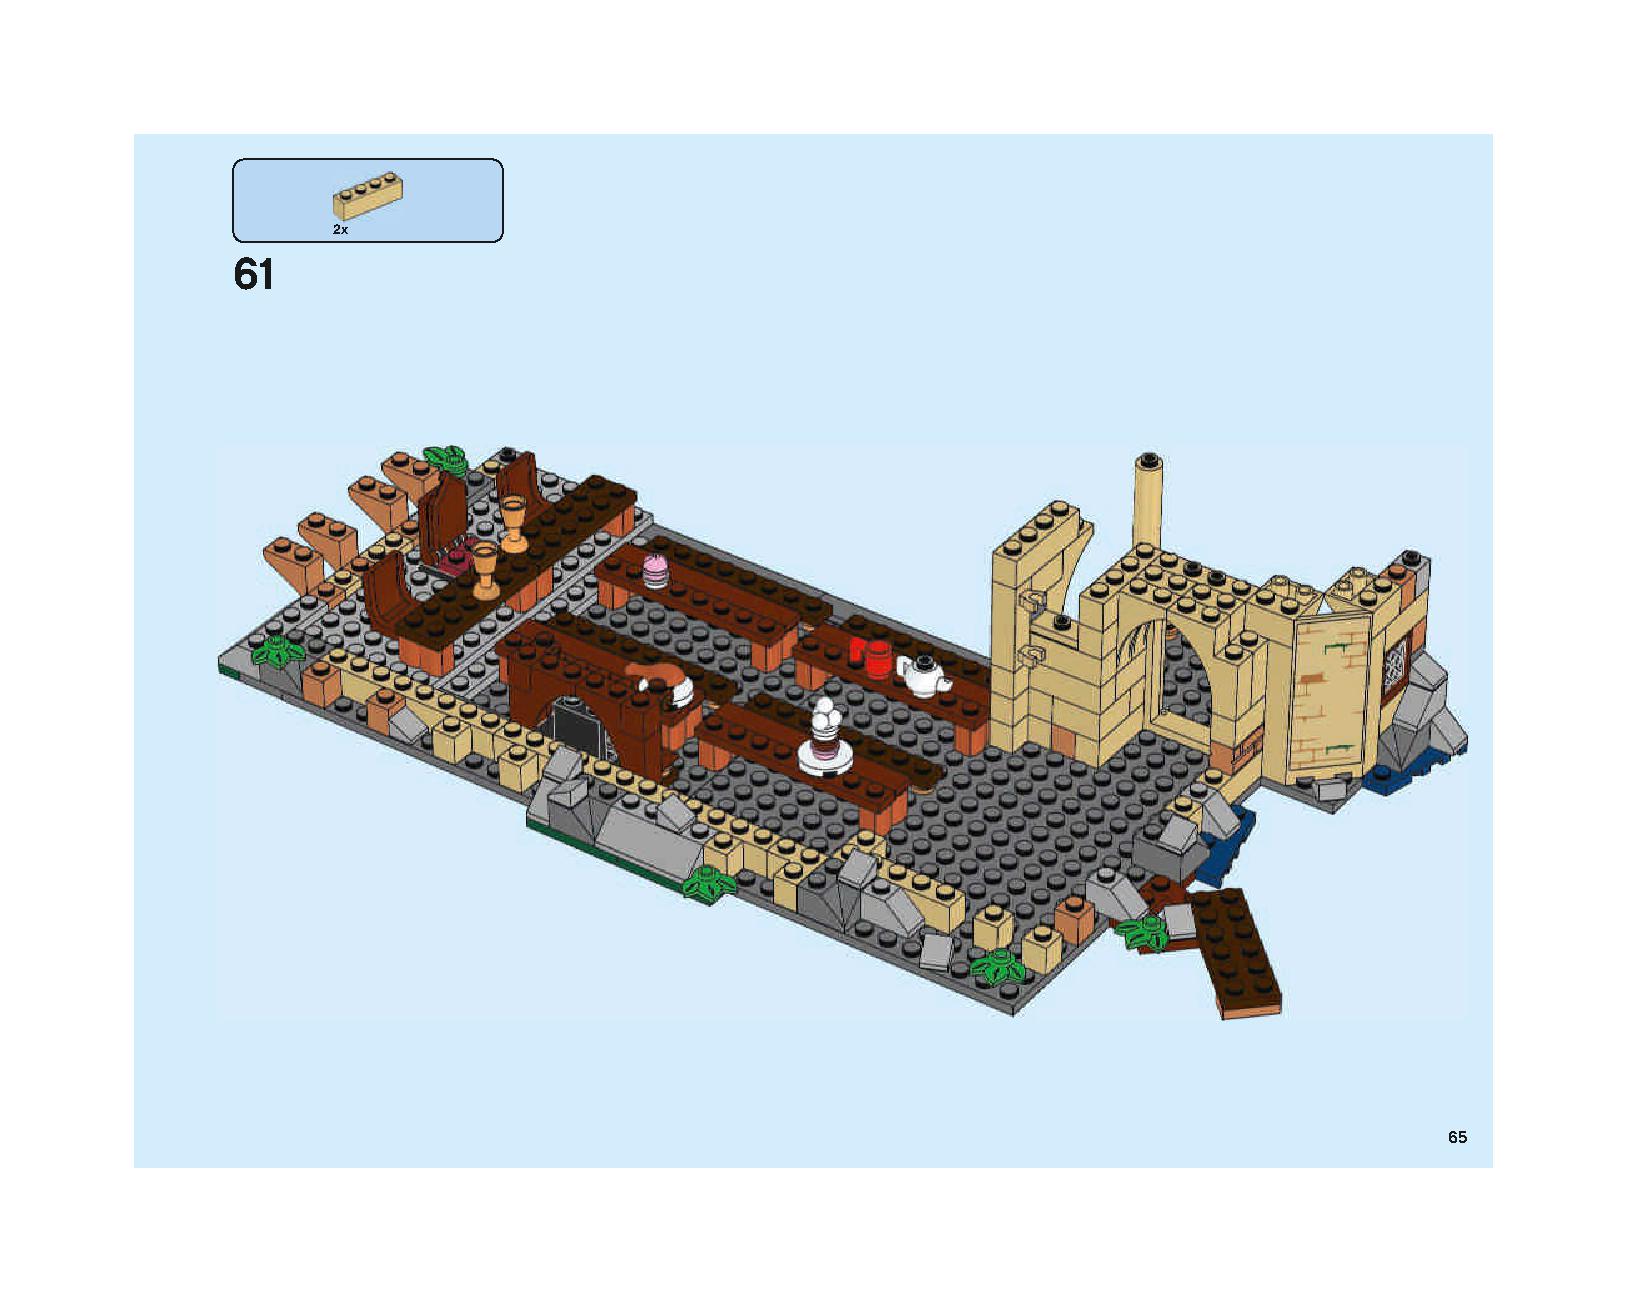 ホグワーツの大広間 75954 レゴの商品情報 レゴの説明書・組立方法 65 page